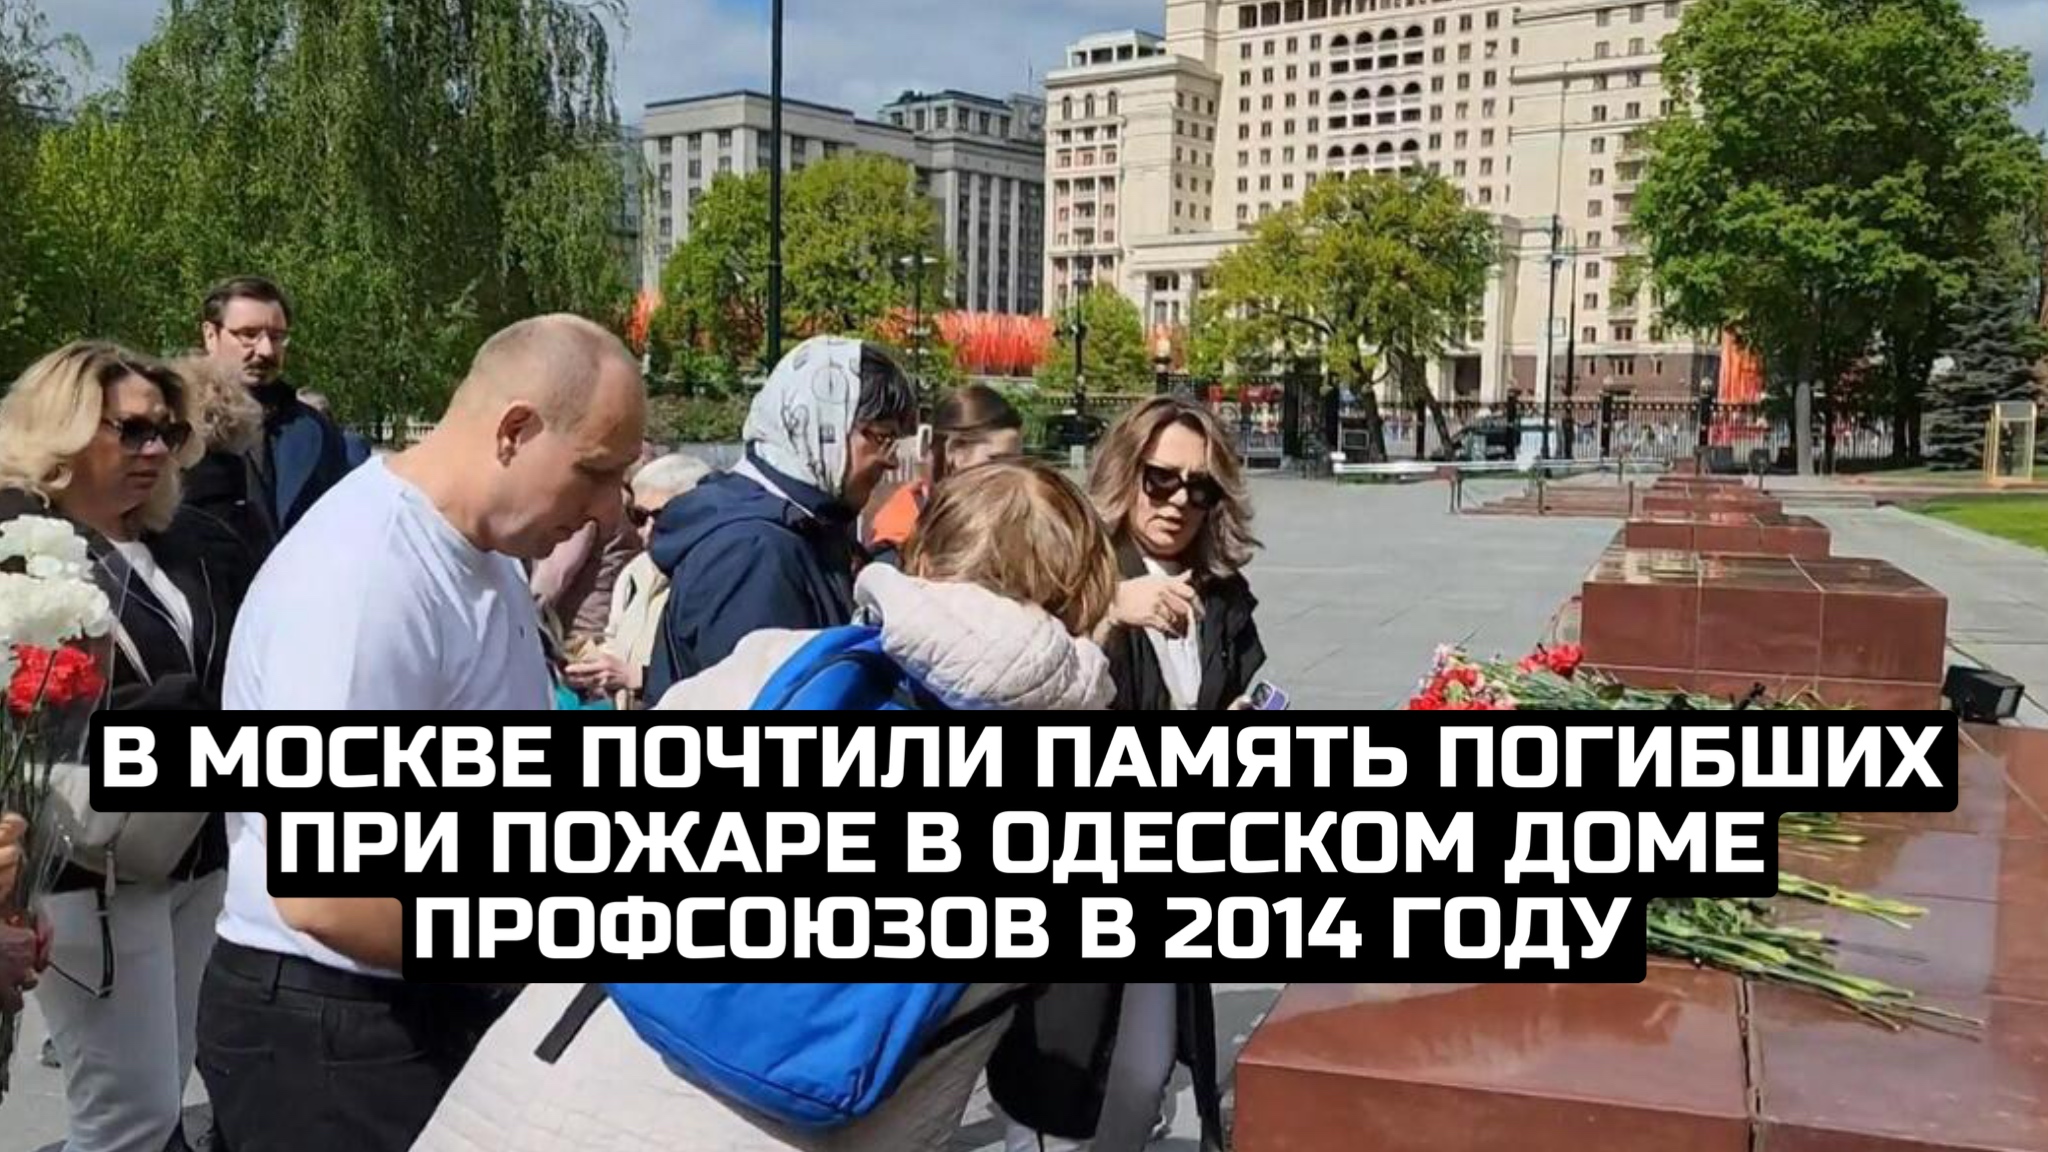 В Москве почтили память погибших при пожаре в одесском Доме профсоюзов в 2014 году